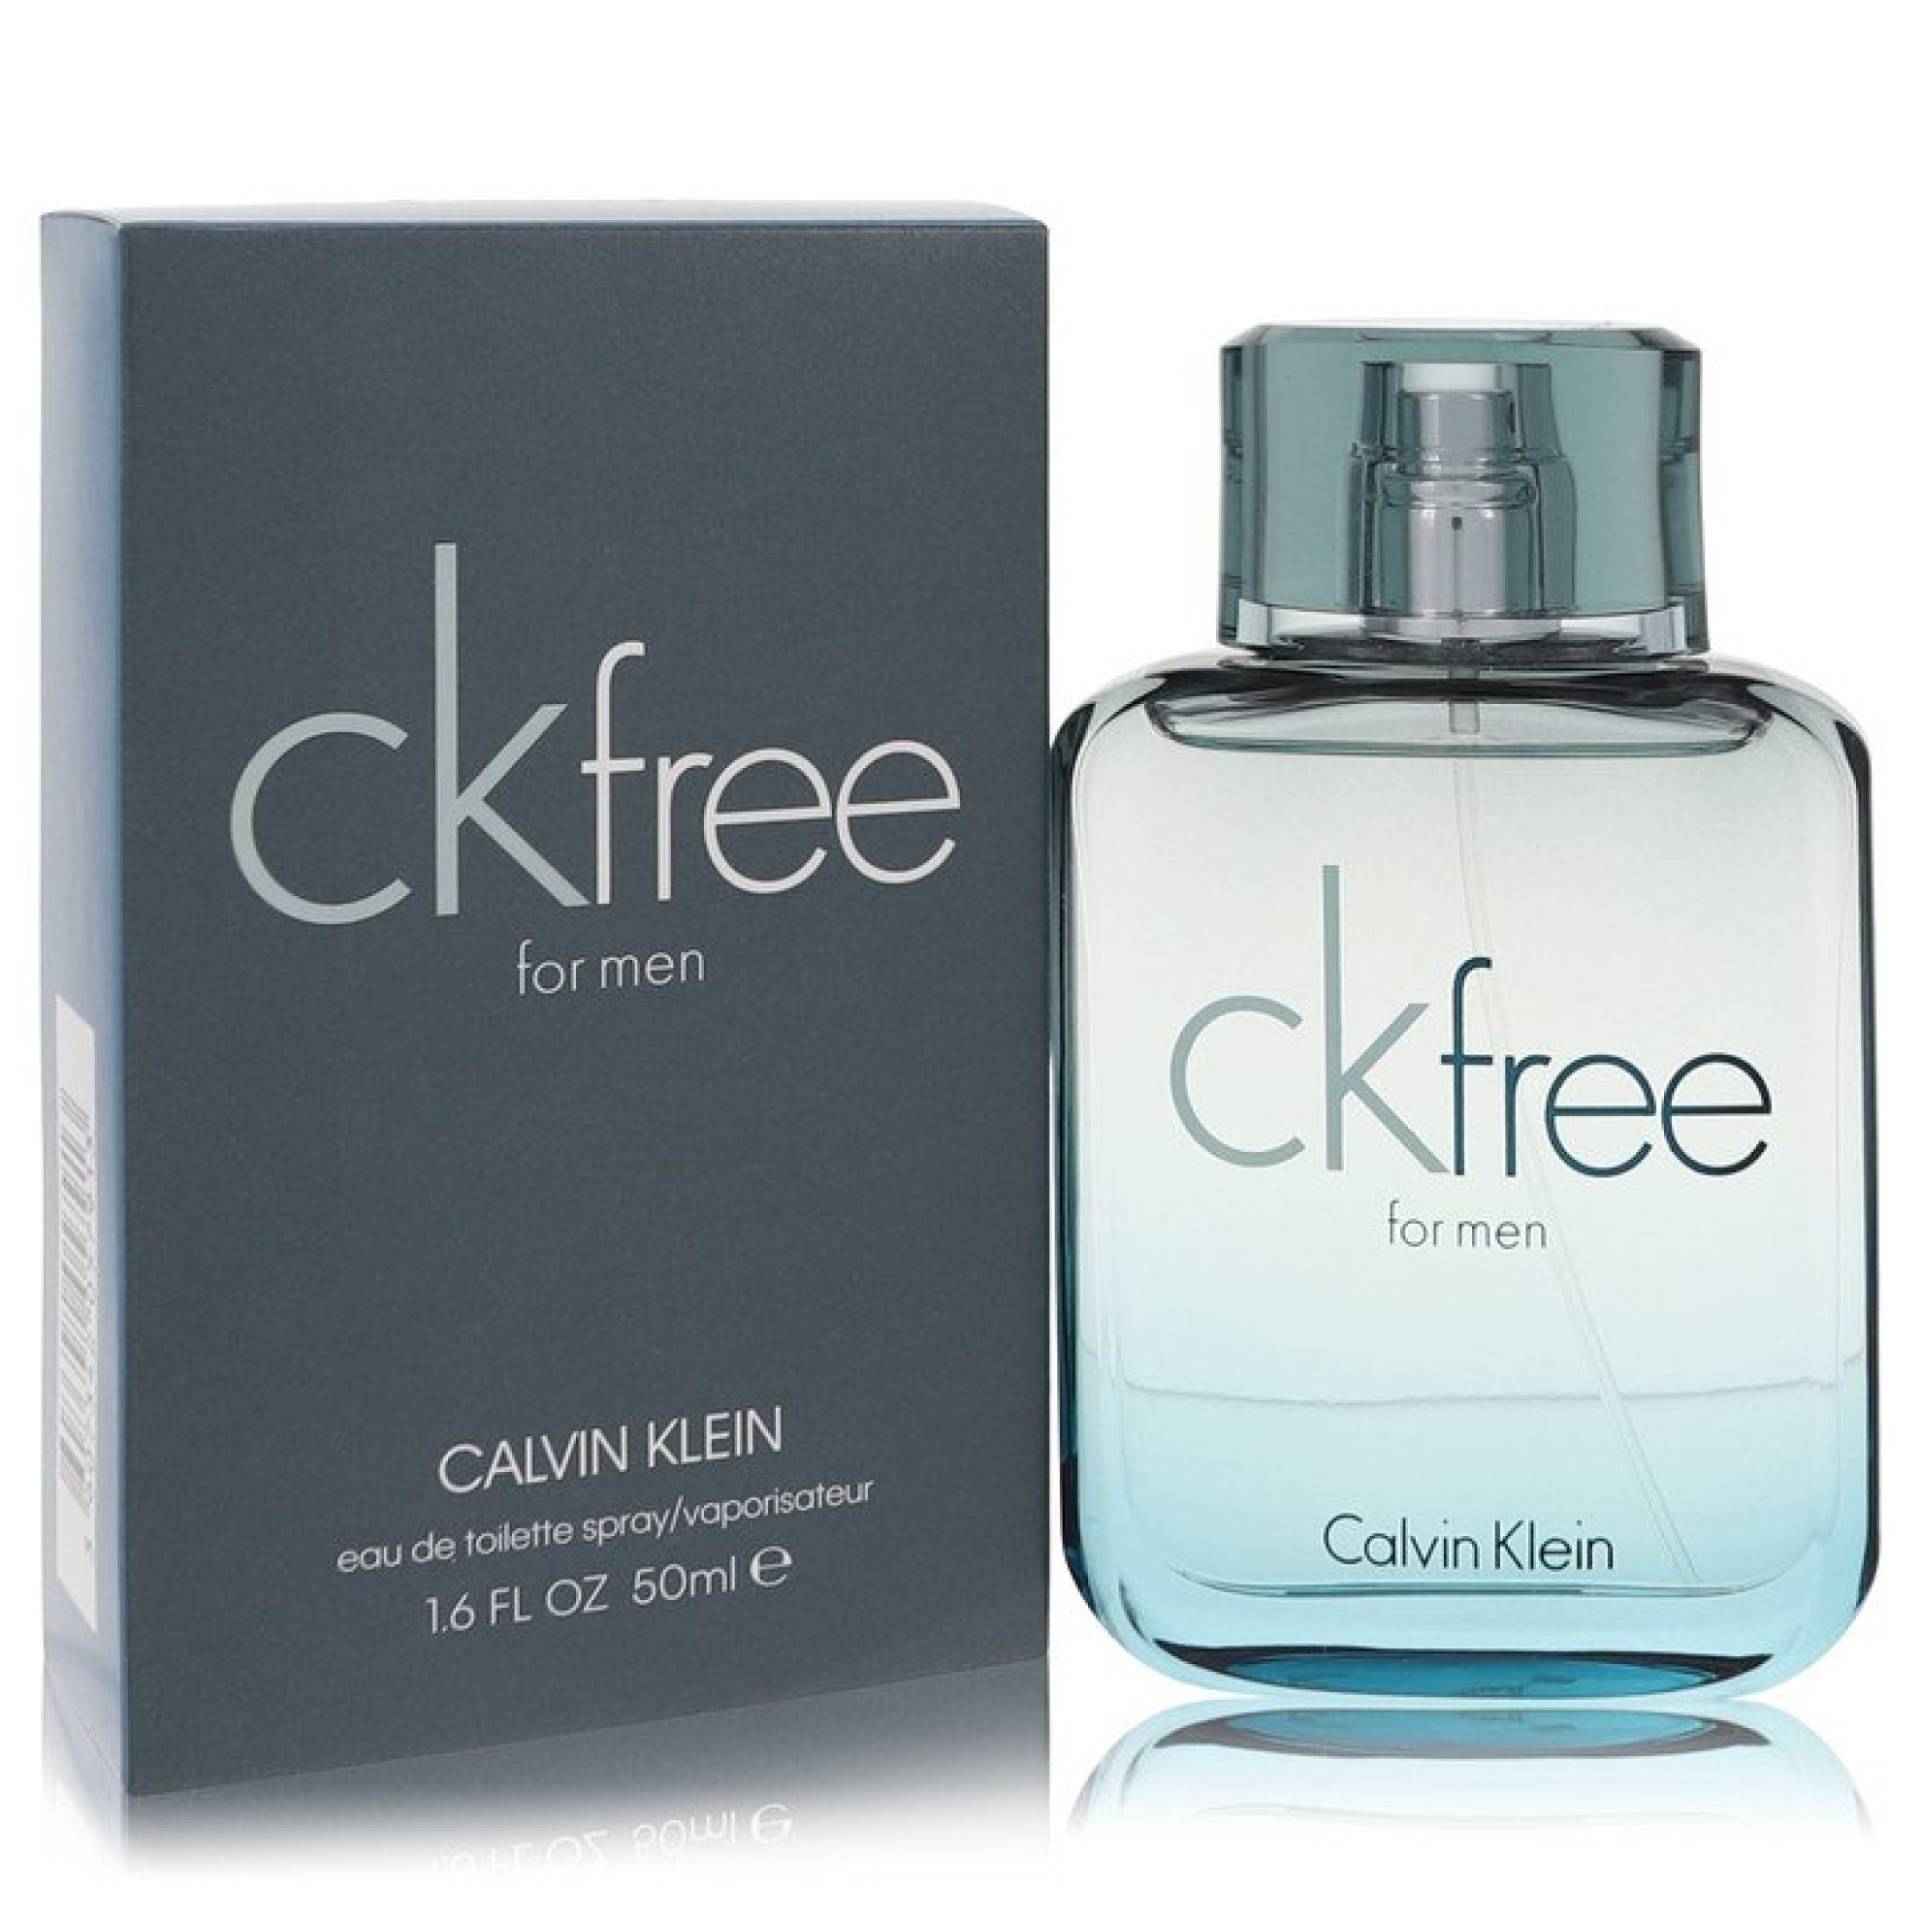 Calvin Klein CK Free Eau De Toilette Spray 50 ml von Calvin Klein